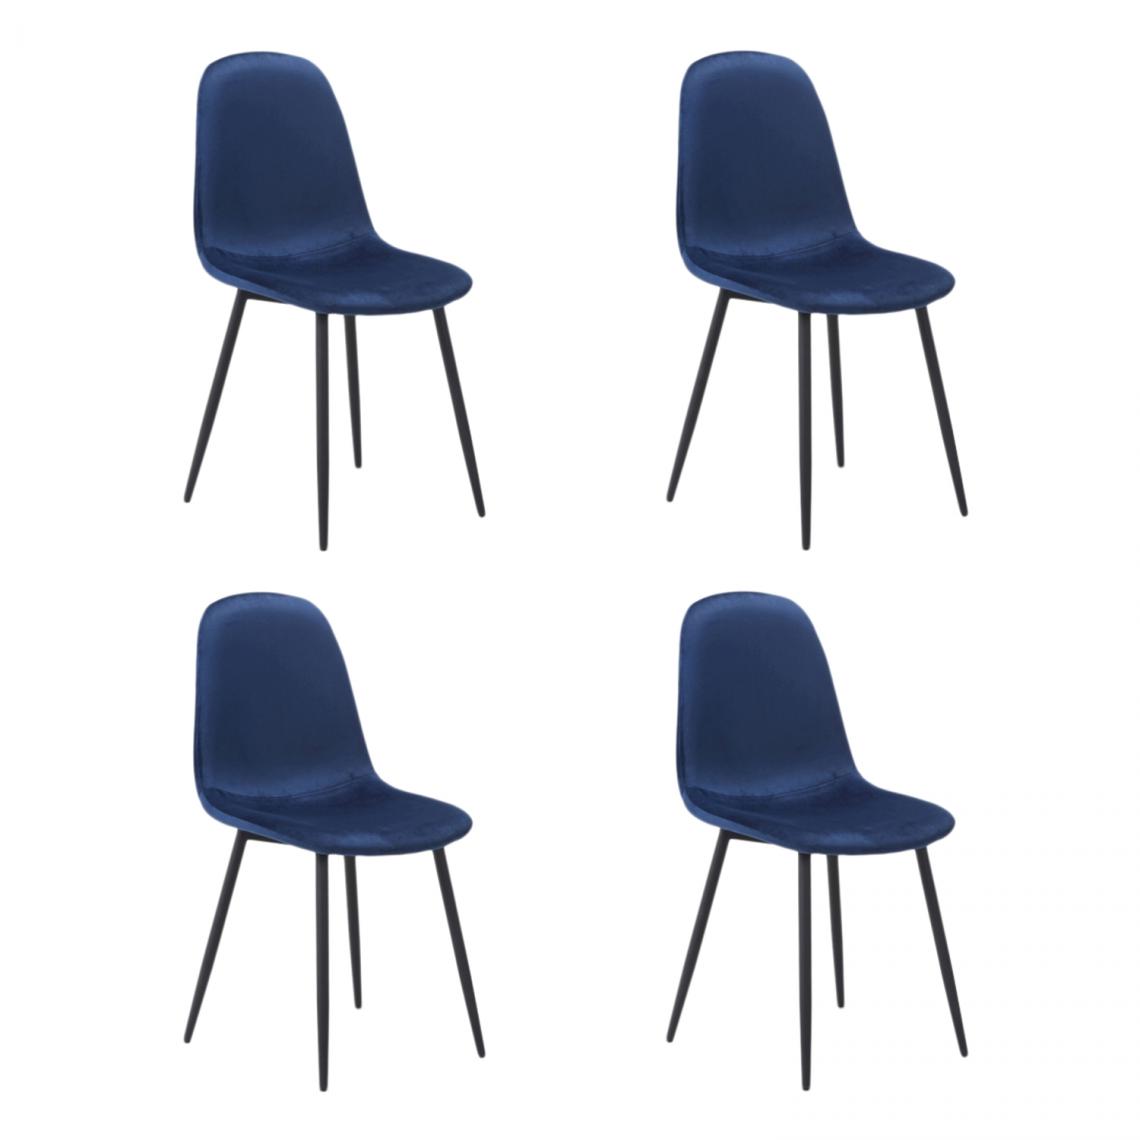 Hucoco - FOKZ - Lot de 4 chaises style scandinave - 86x44x39 cm - Tissu velouté - Pieds robustes en métal - Blue - Chaises